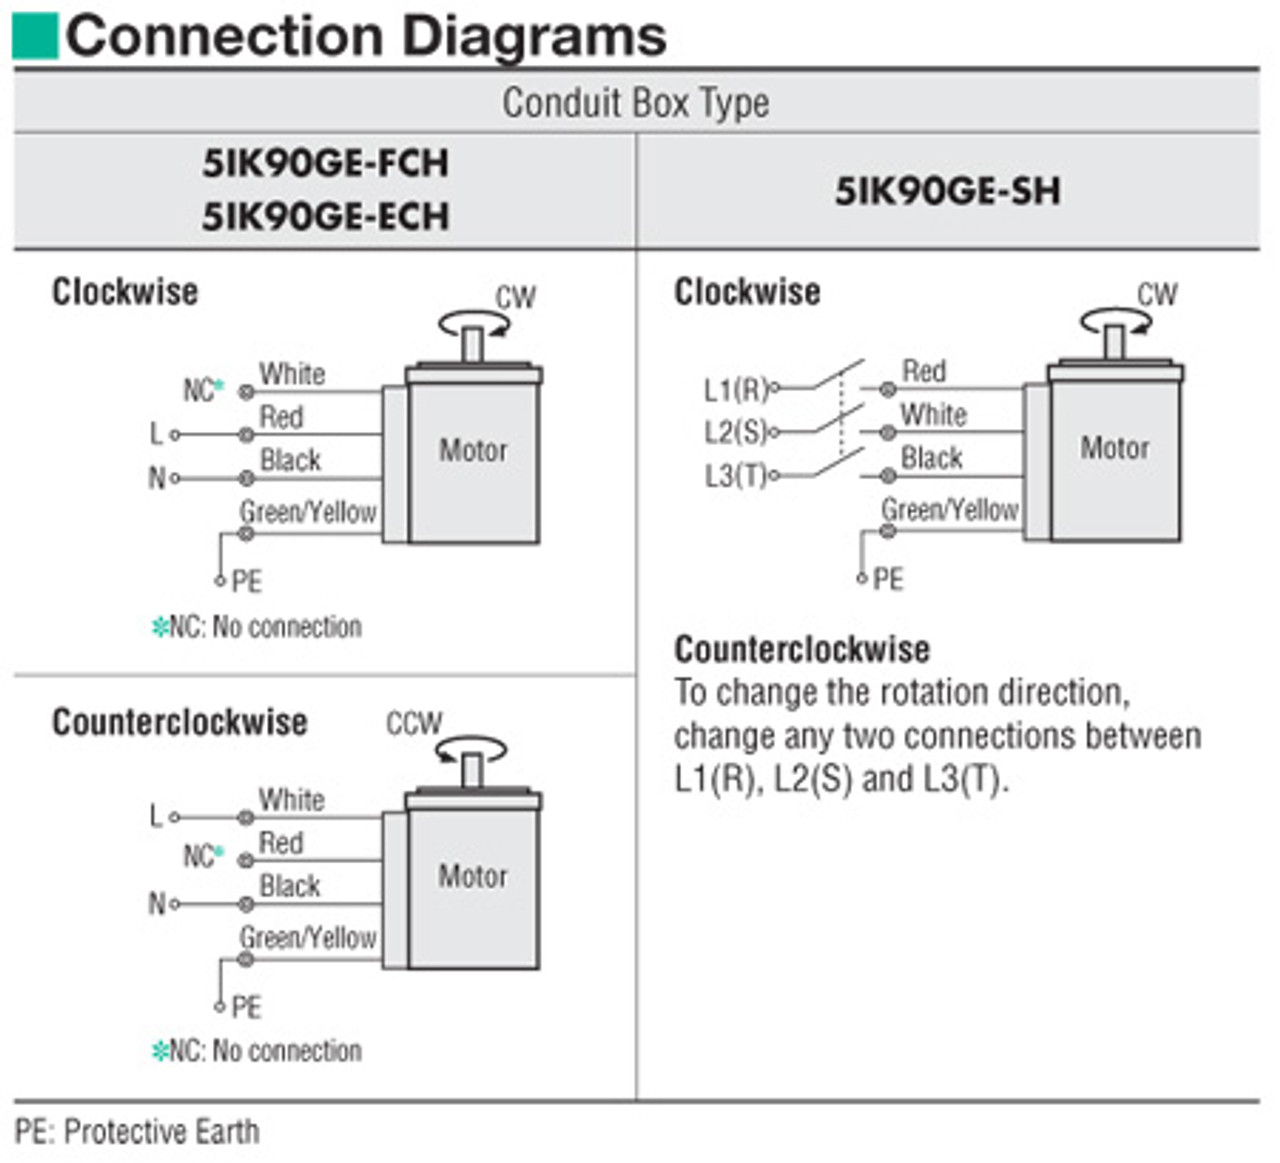 5IK90GE-FCH / 5GE180SA - Connection